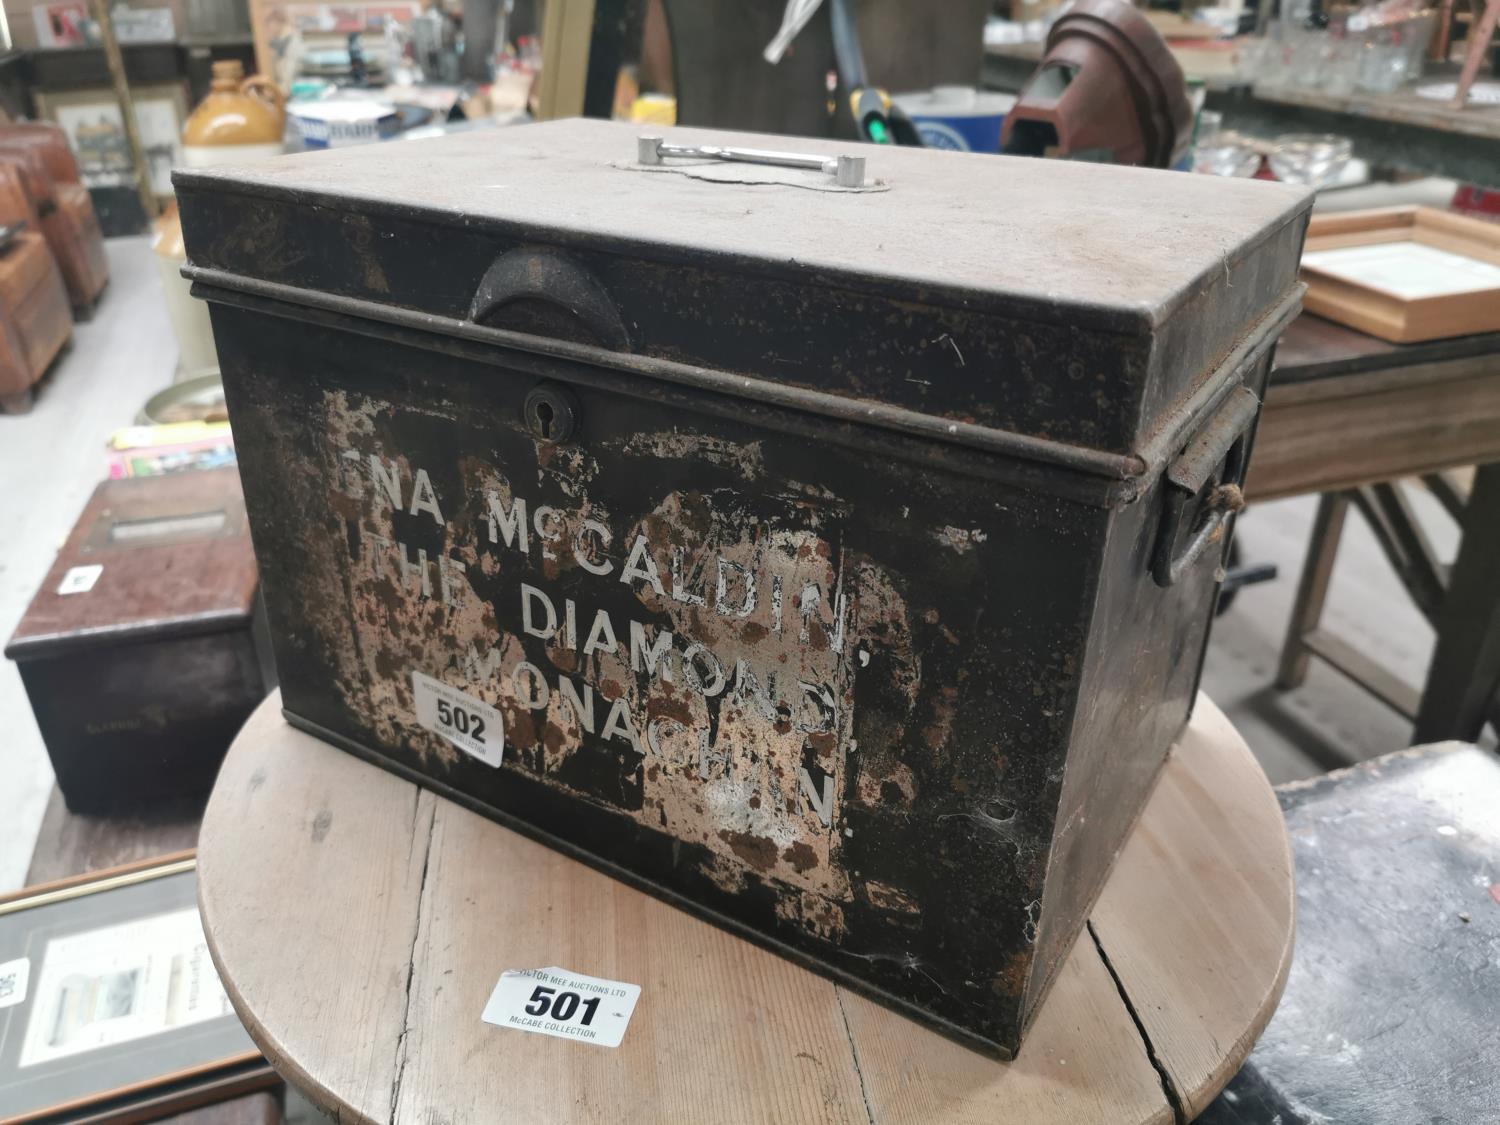 19th. C. metal deed box.